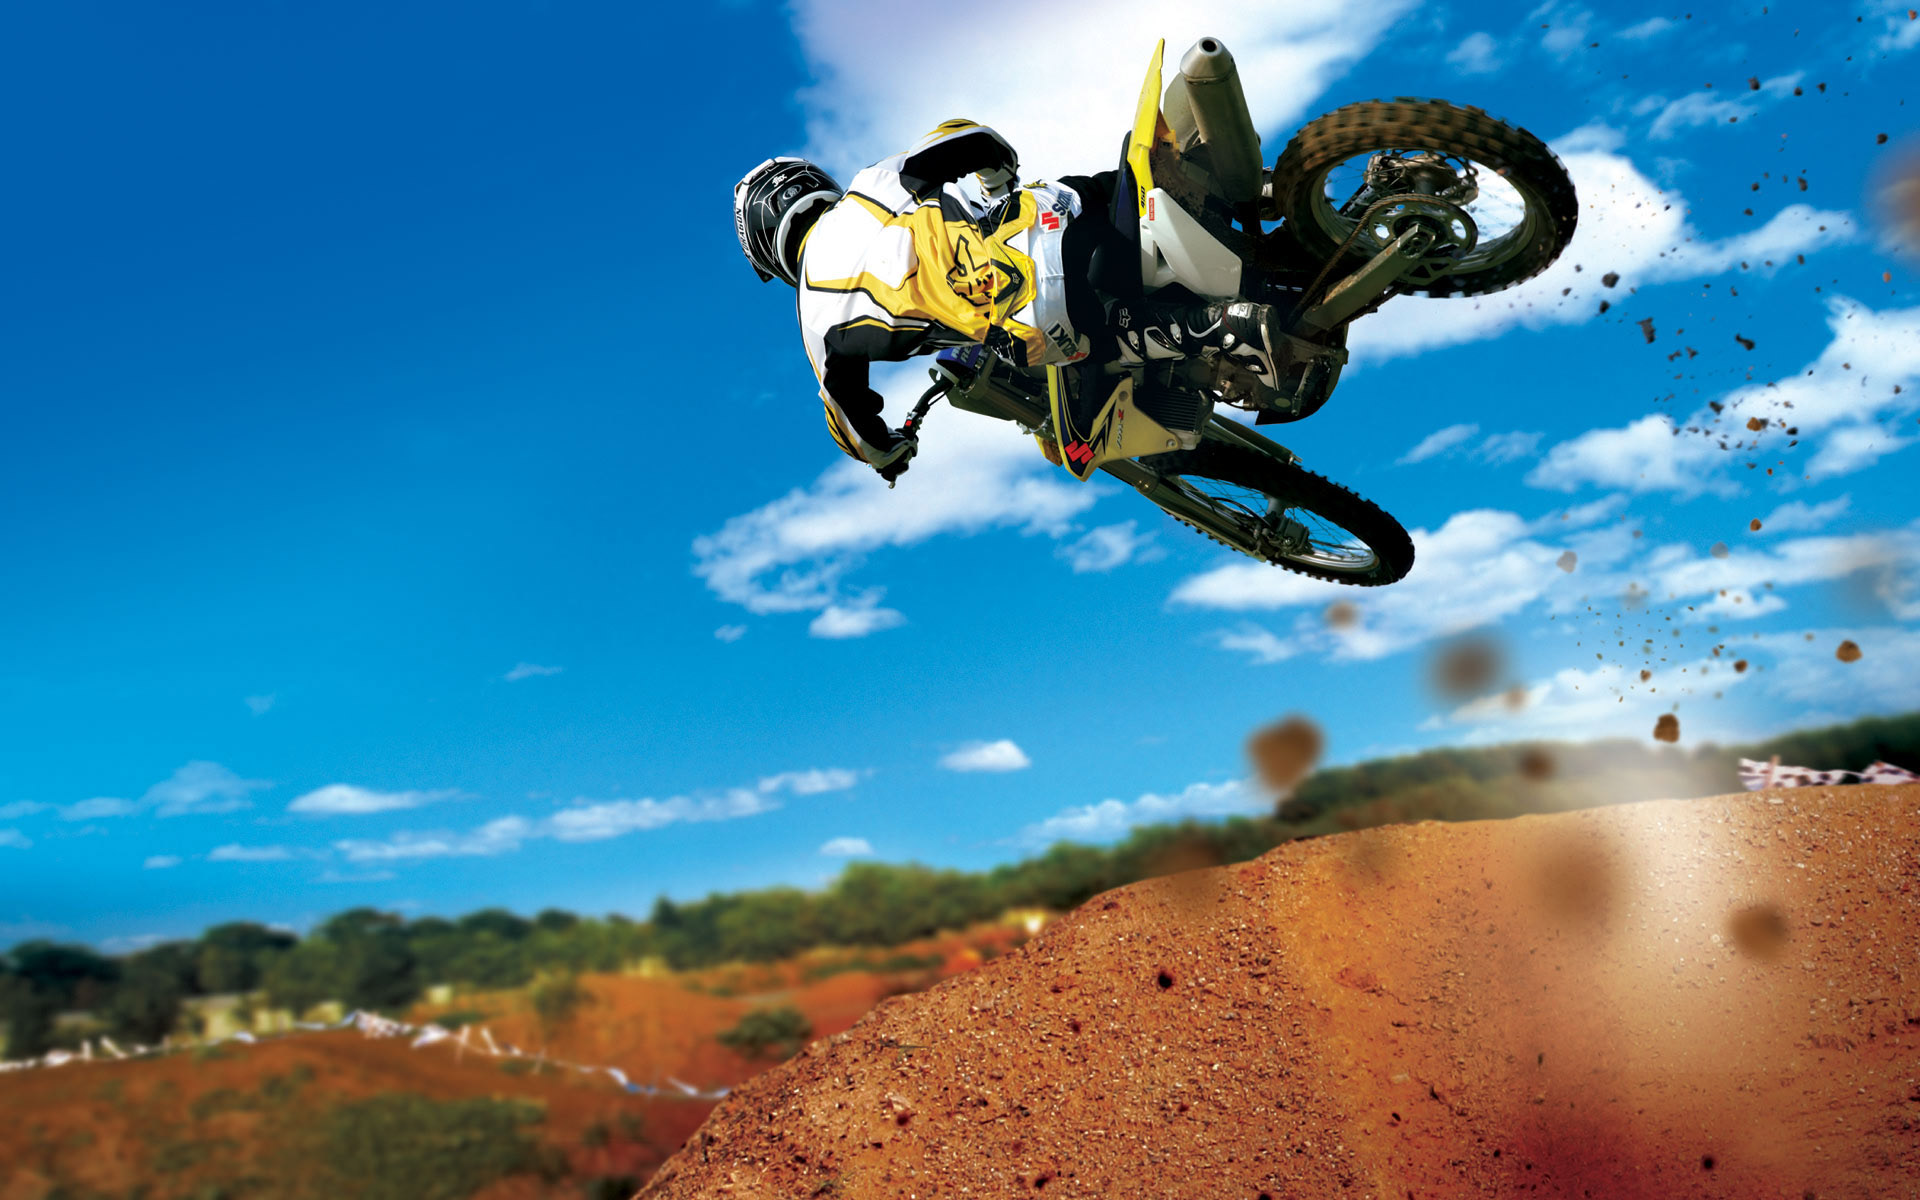 HD Motocross Bikes Wallpaper Pack